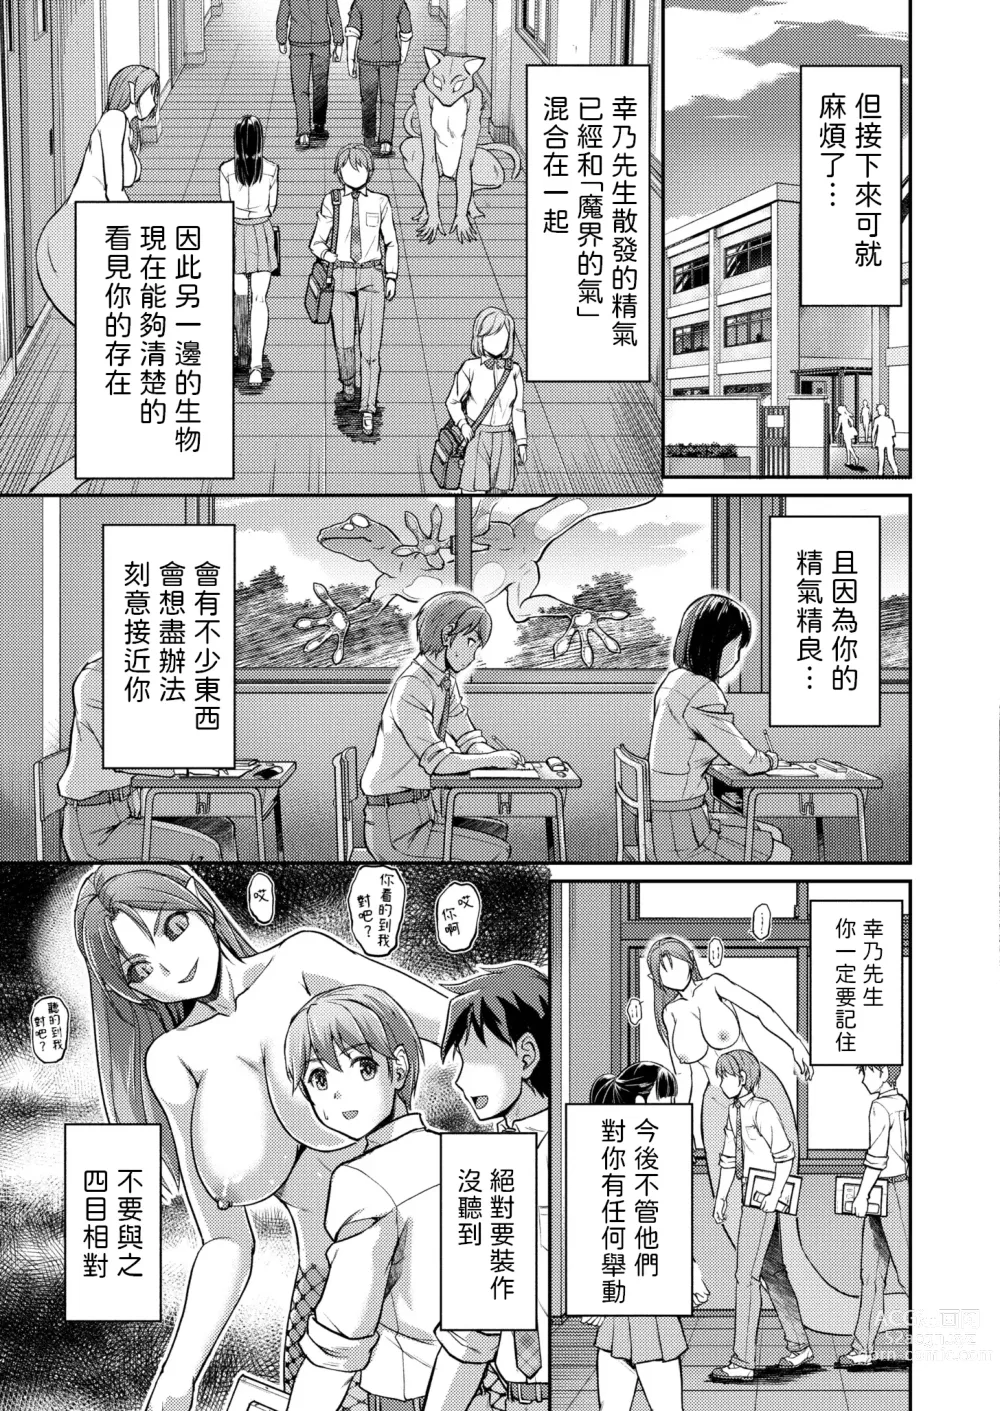 Page 3 of manga Youjokan no Nichijou Saishuuwa